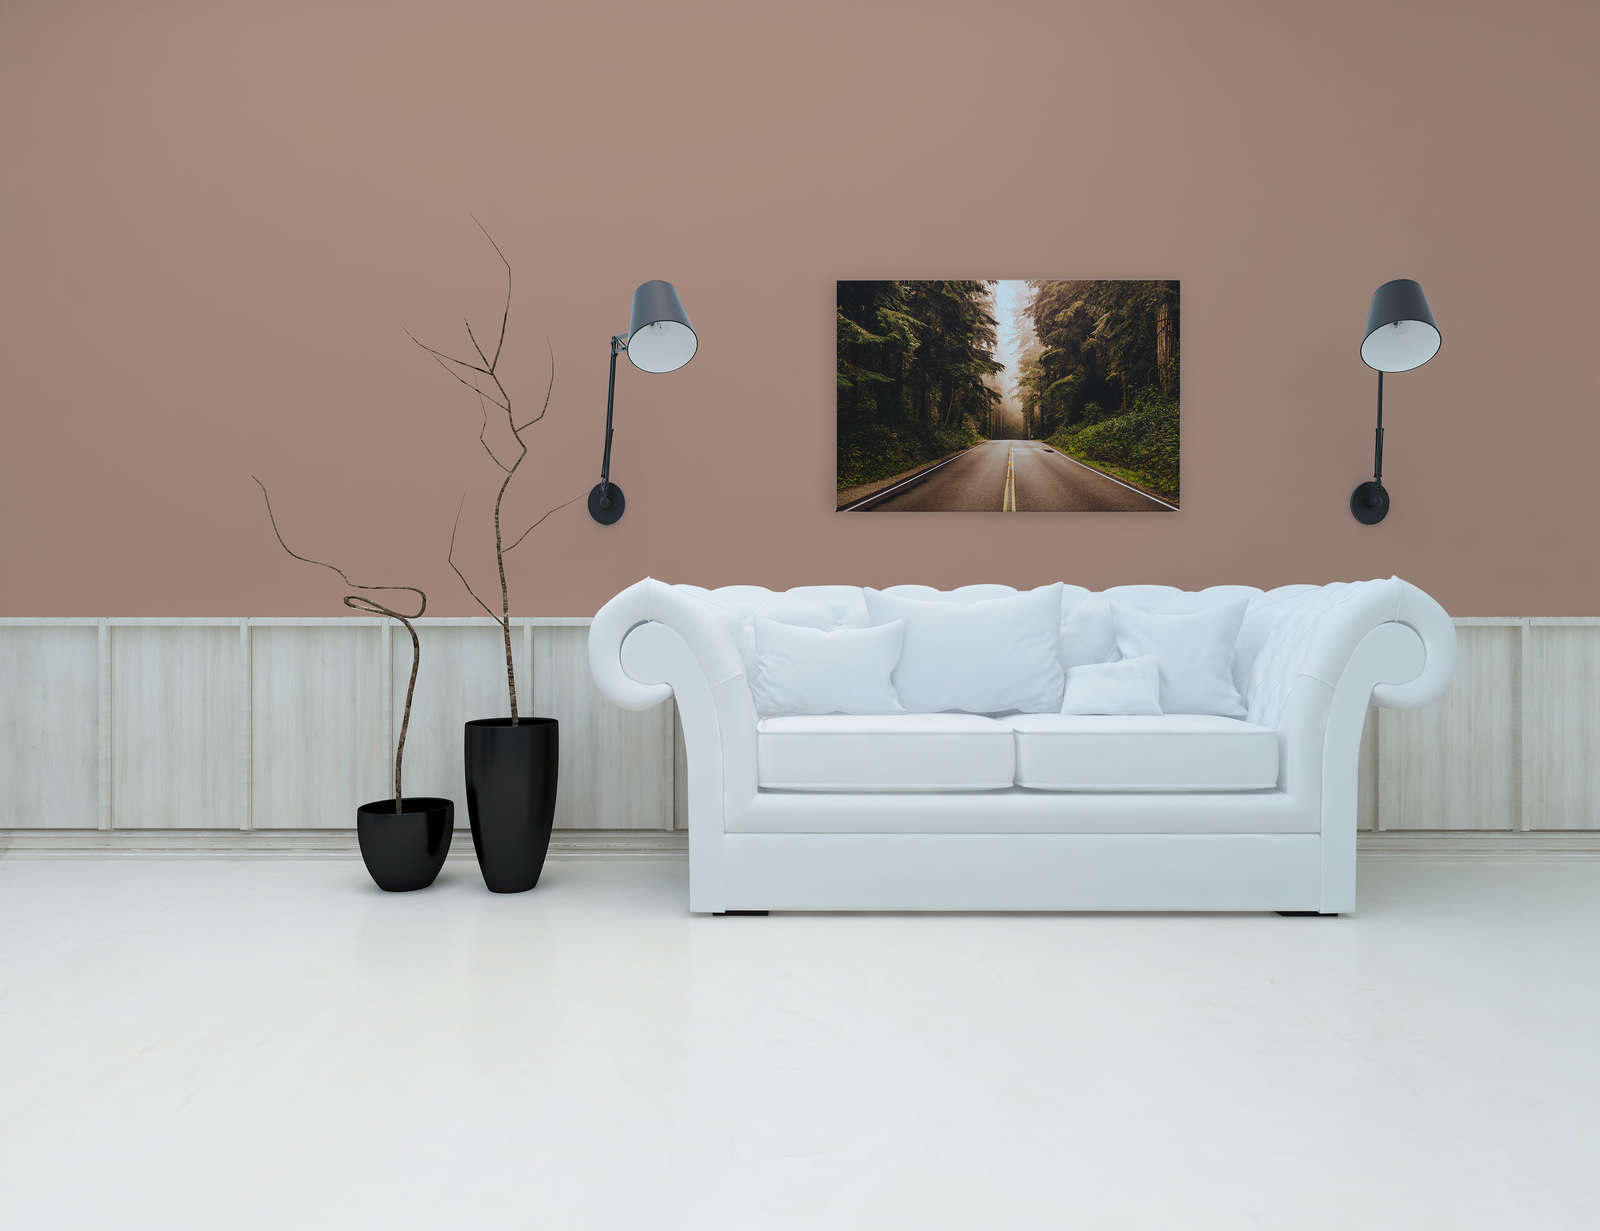             Canvas met Amerikaanse snelweg in het bos - 0,90 m x 0,60 m
        